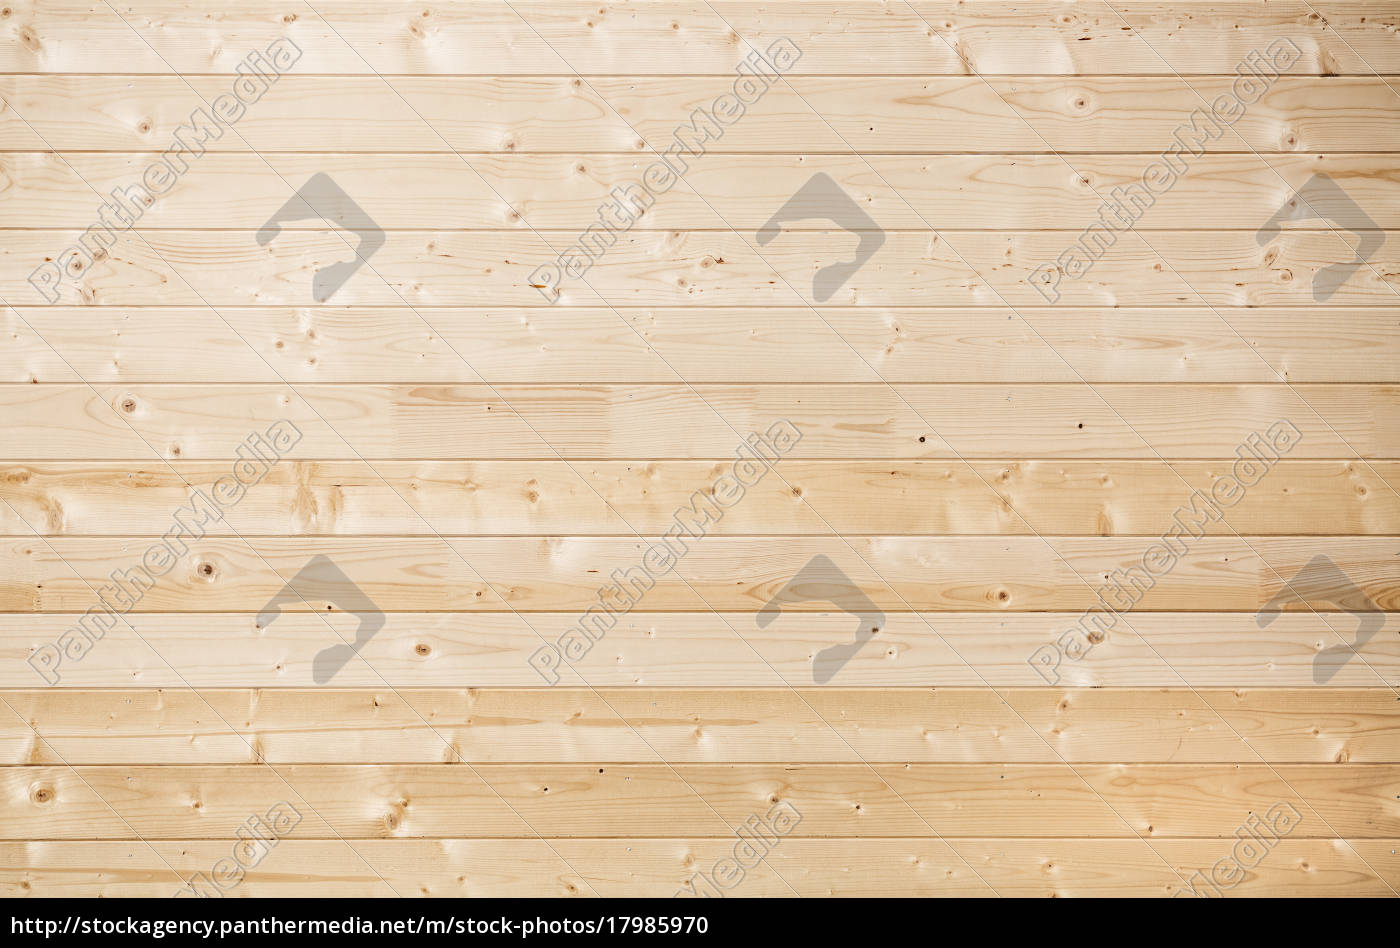 Sfondo di assi di legno - Stockphoto #17985970